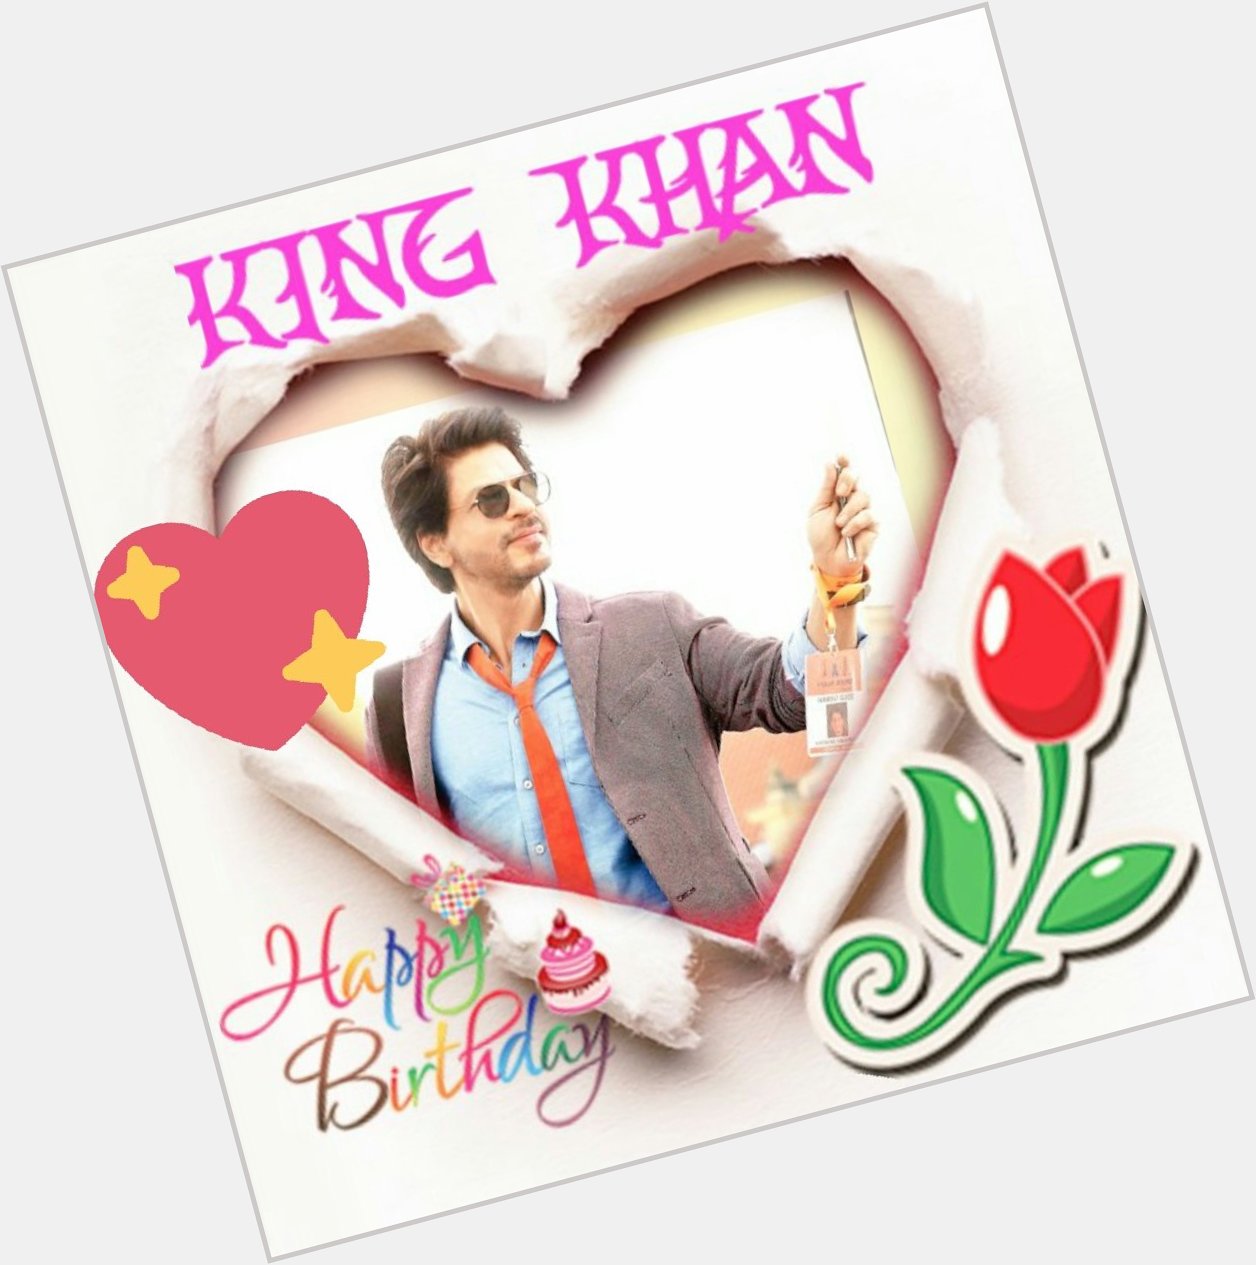  Happy birthday king shahrukh khan 